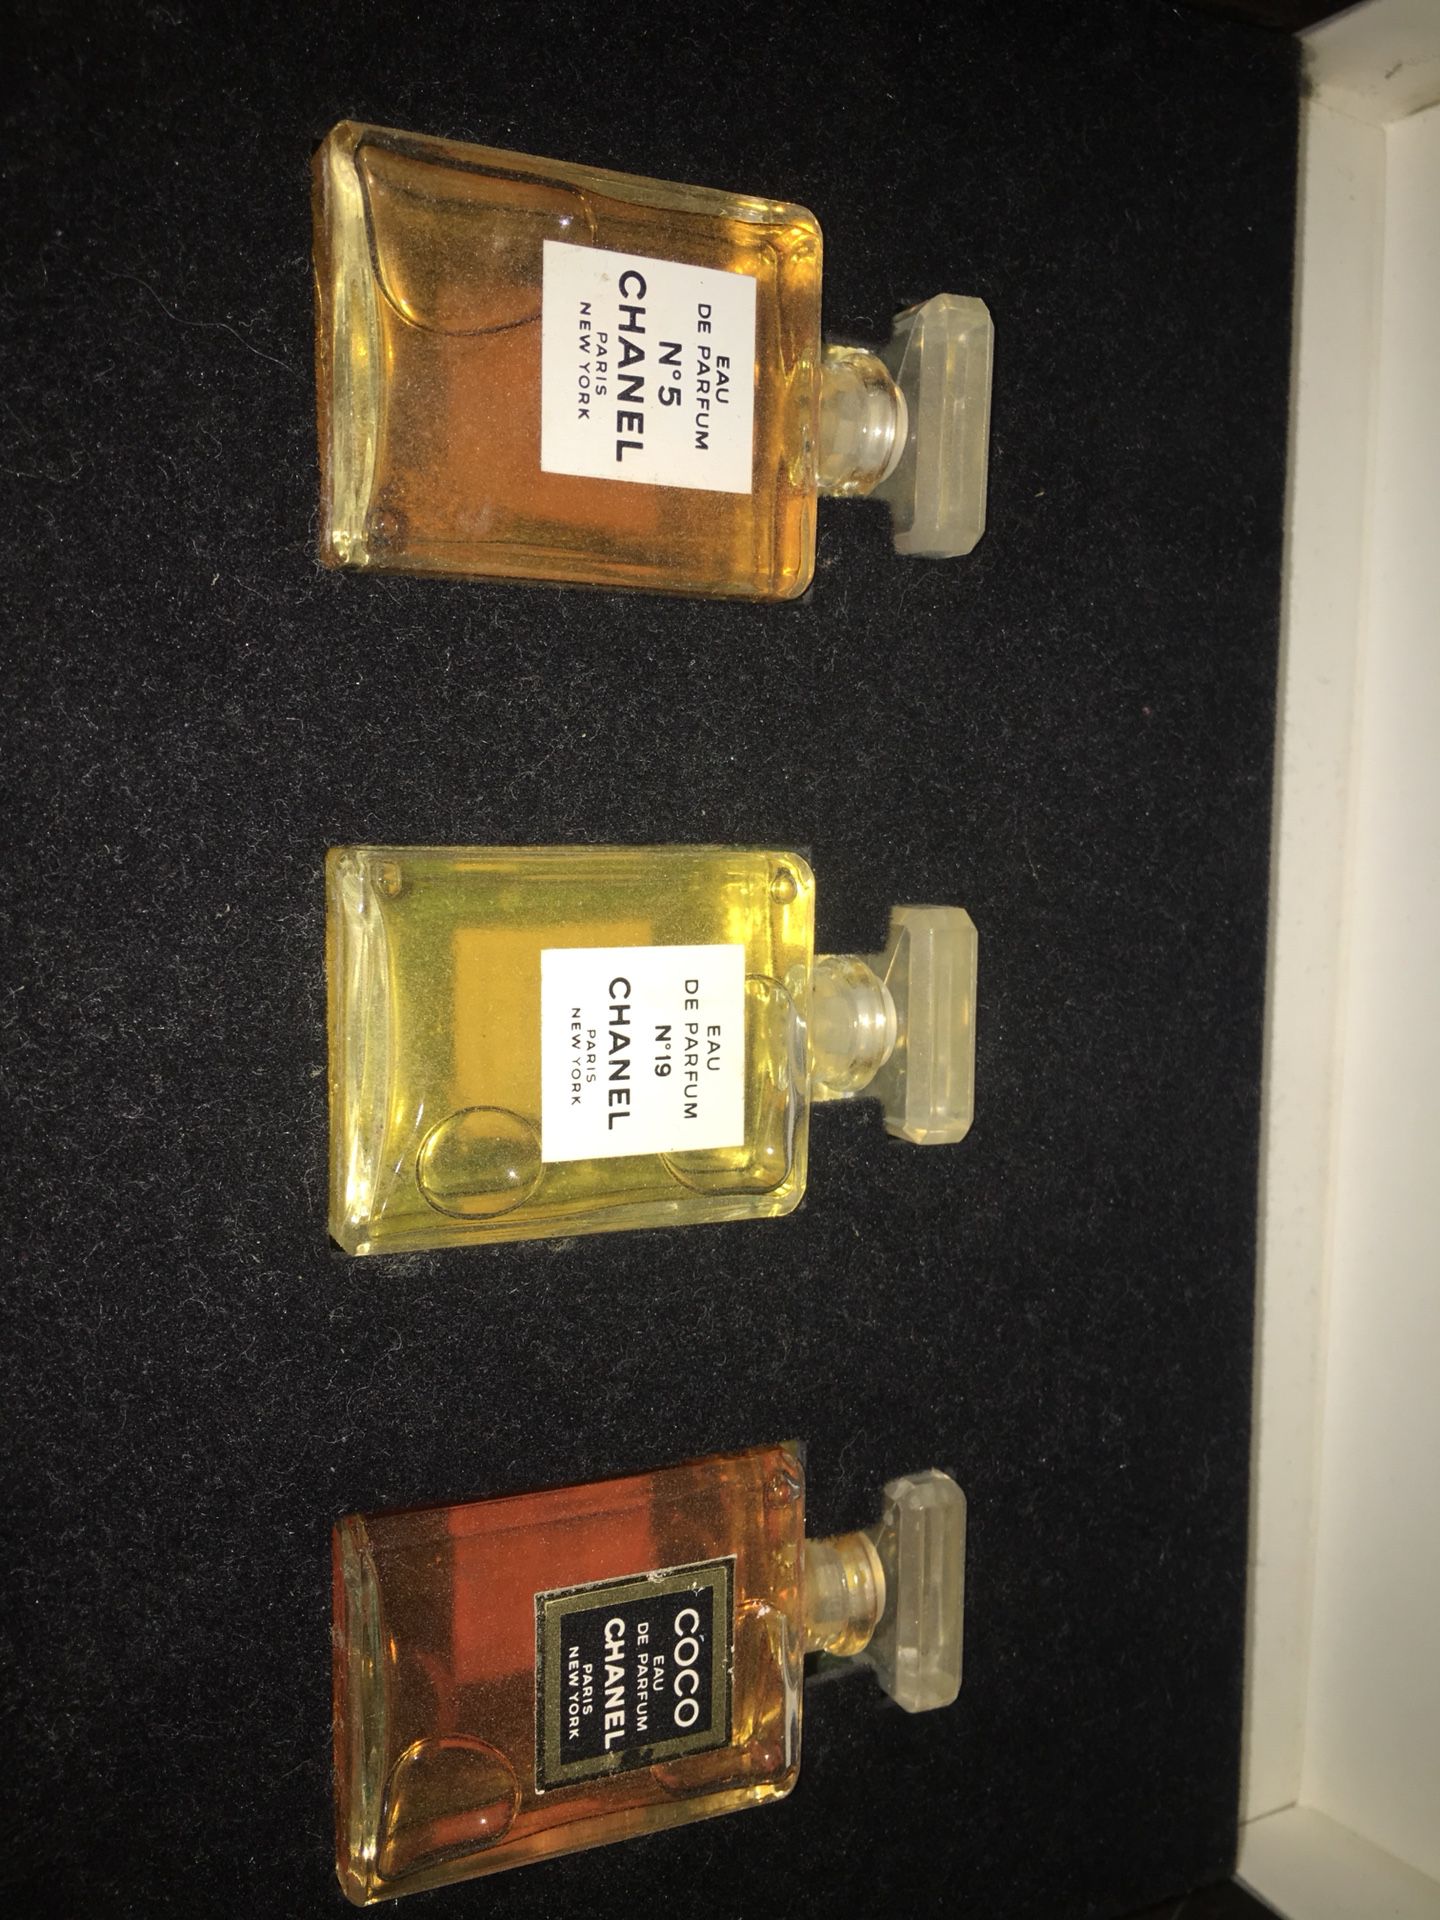 Used] Unused CHANEL Perfume Mini Bottle Set Cosmetics rm1-1